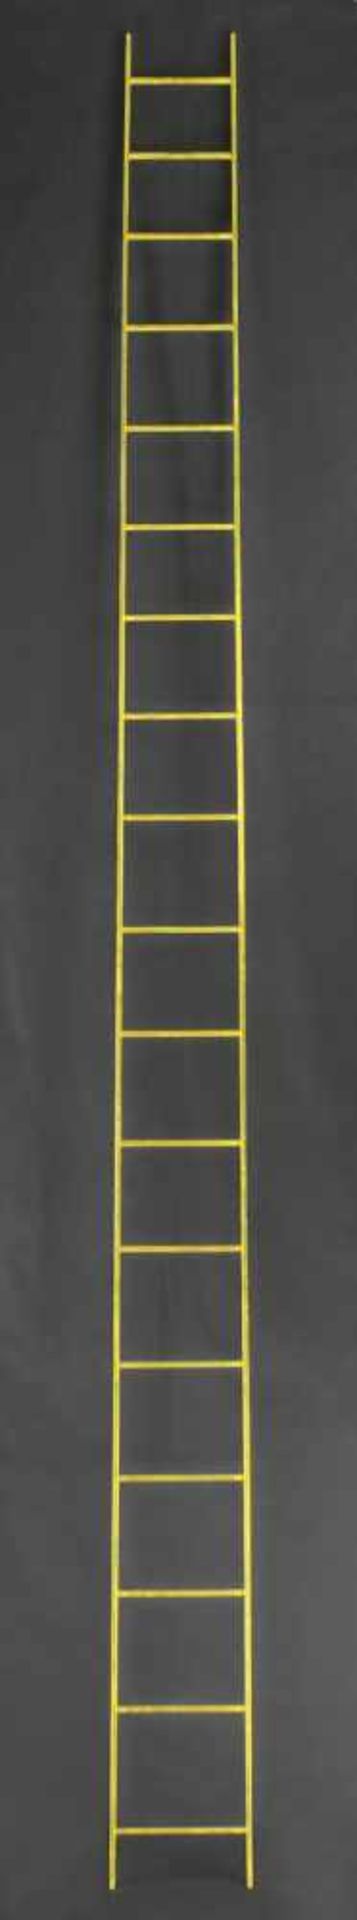 Wilson, Robert: Golden LadderGolden LadderHolz, goldfarben lackiert. Wohl 2003.274 x 18,2 x 2 cm.